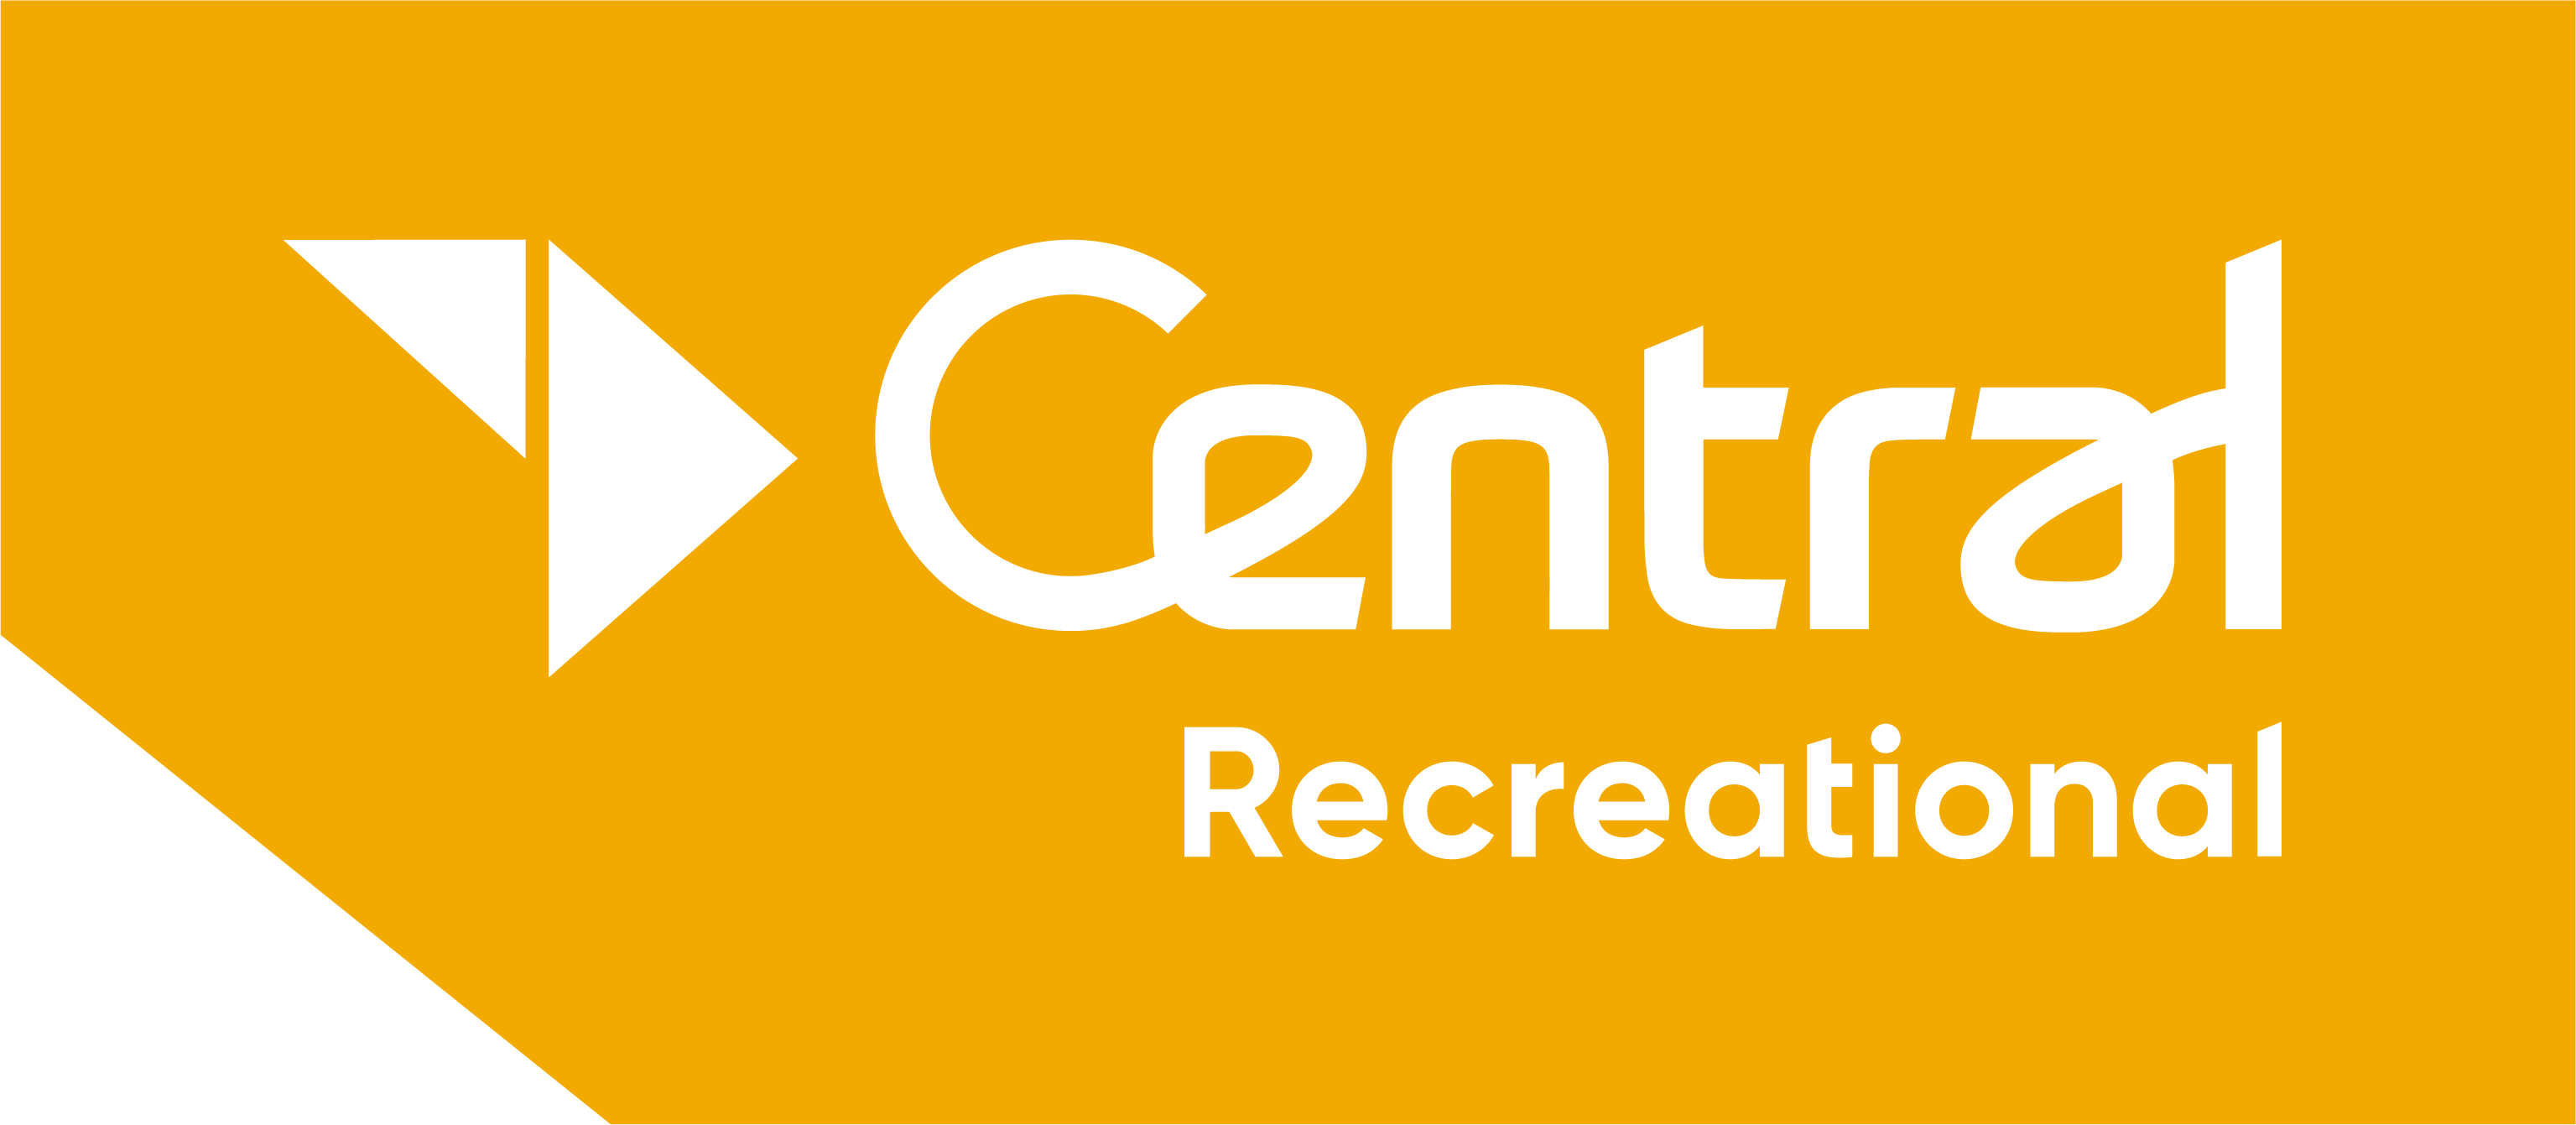 Central recreational logo